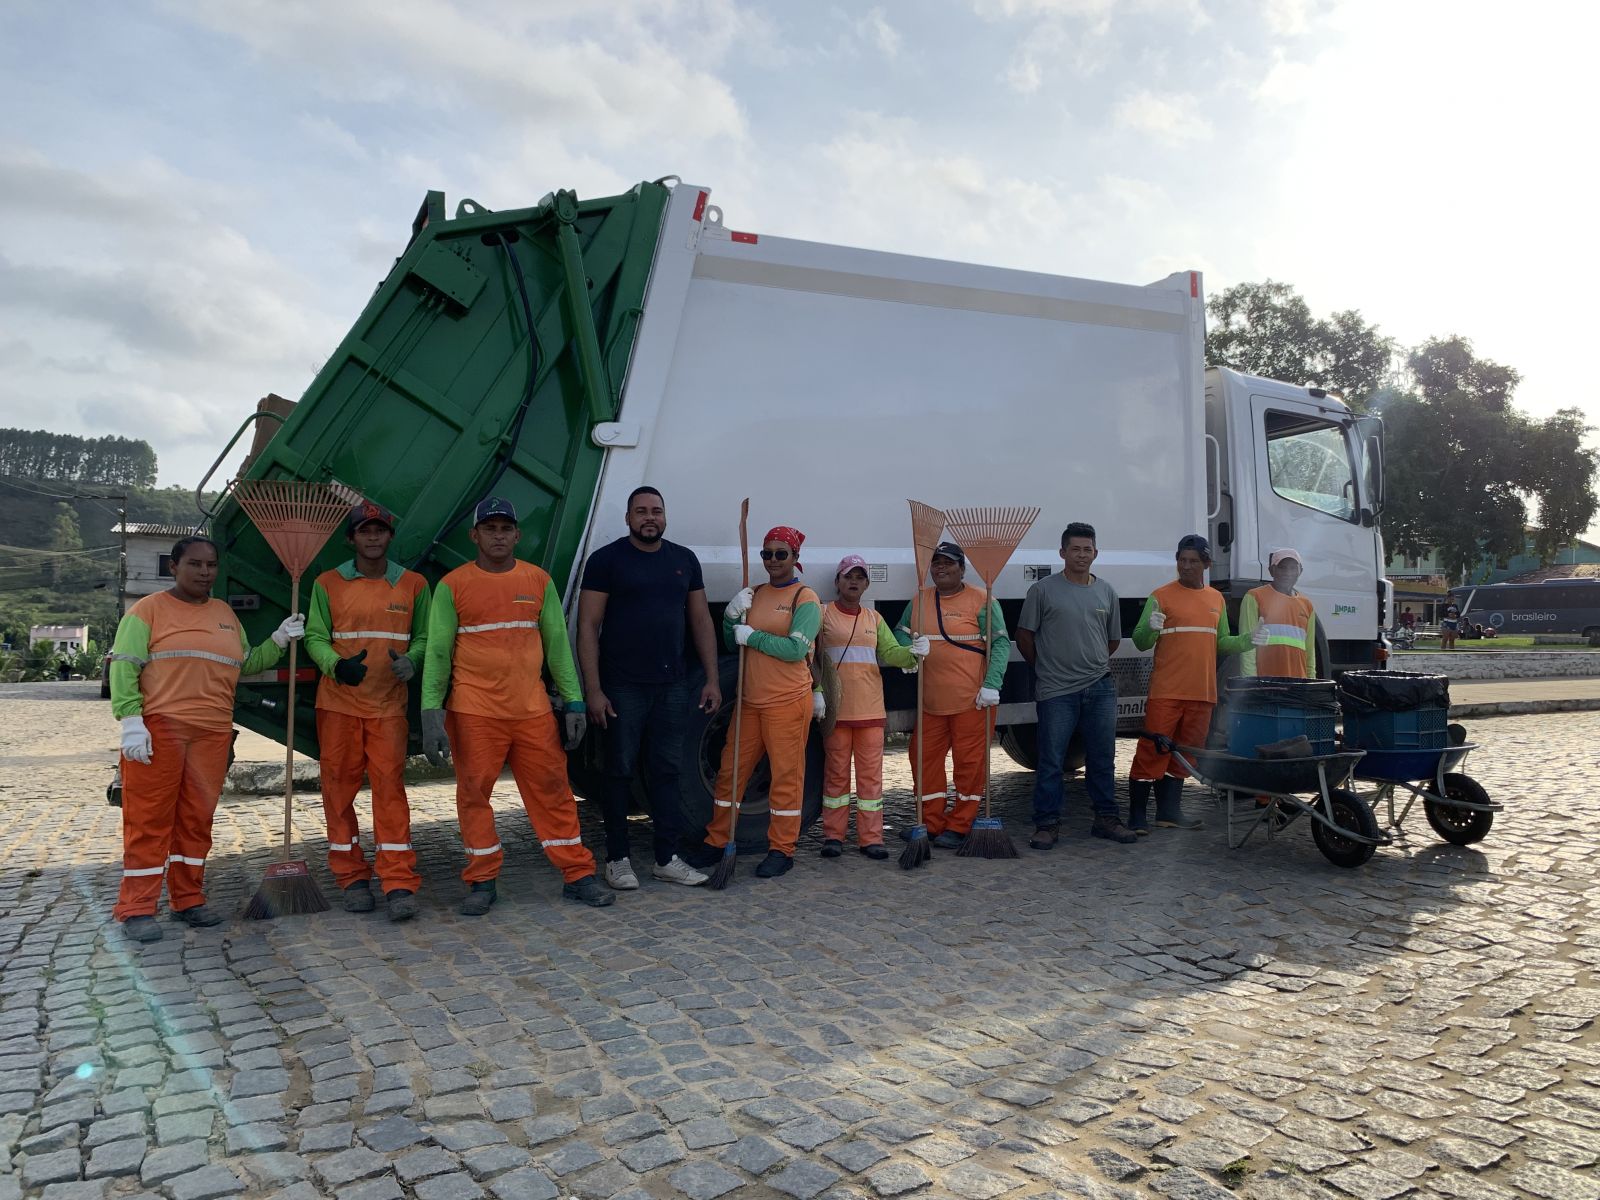 Veículo foi destinado pela empresa Limpar, responsável pelo serviço de limpeza pública urbana no município. (Foto: Alex Gonçalves/BAHIA DIA A DIA)